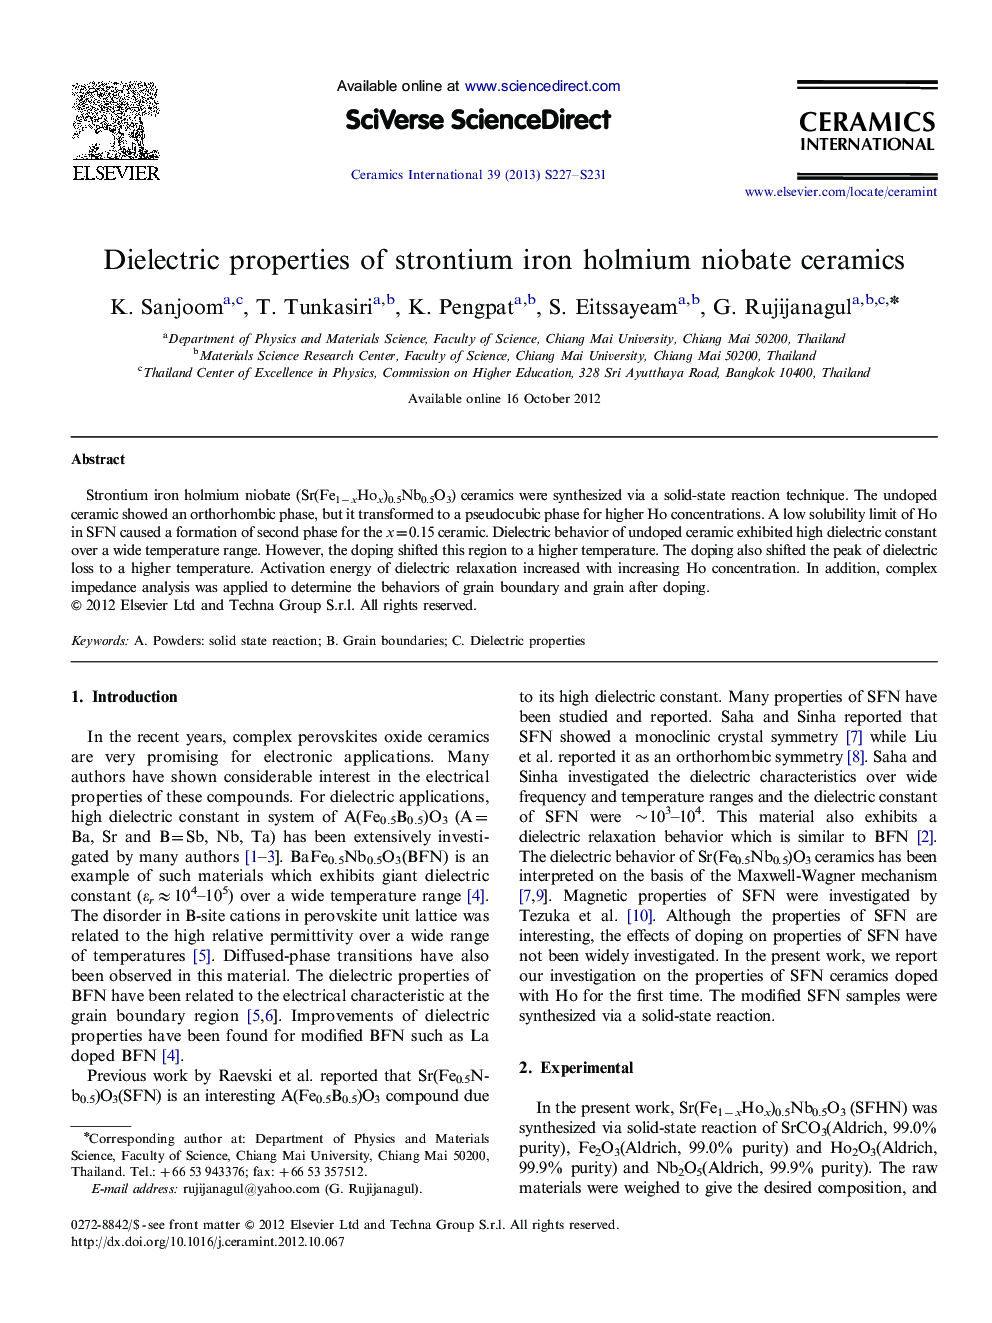 Dielectric properties of strontium iron holmium niobate ceramics